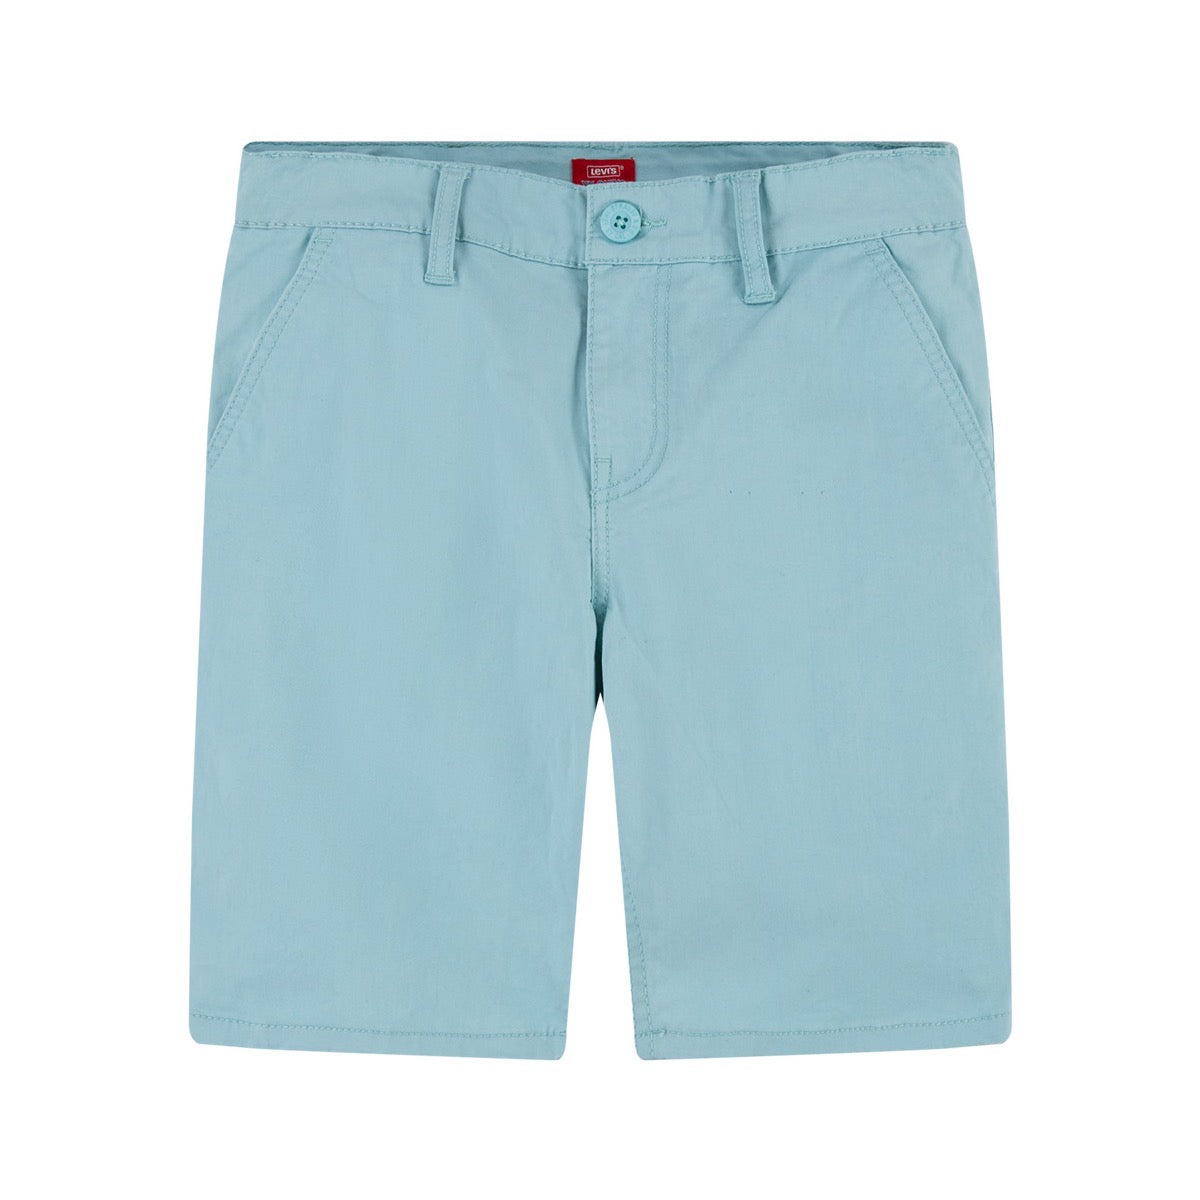 Levis Boys Chino Shorts E9c941 Aqua Clothing 10YRS / Aqua,12YRS / Aqua,14YRS / Aqua,16YRS / Aqua